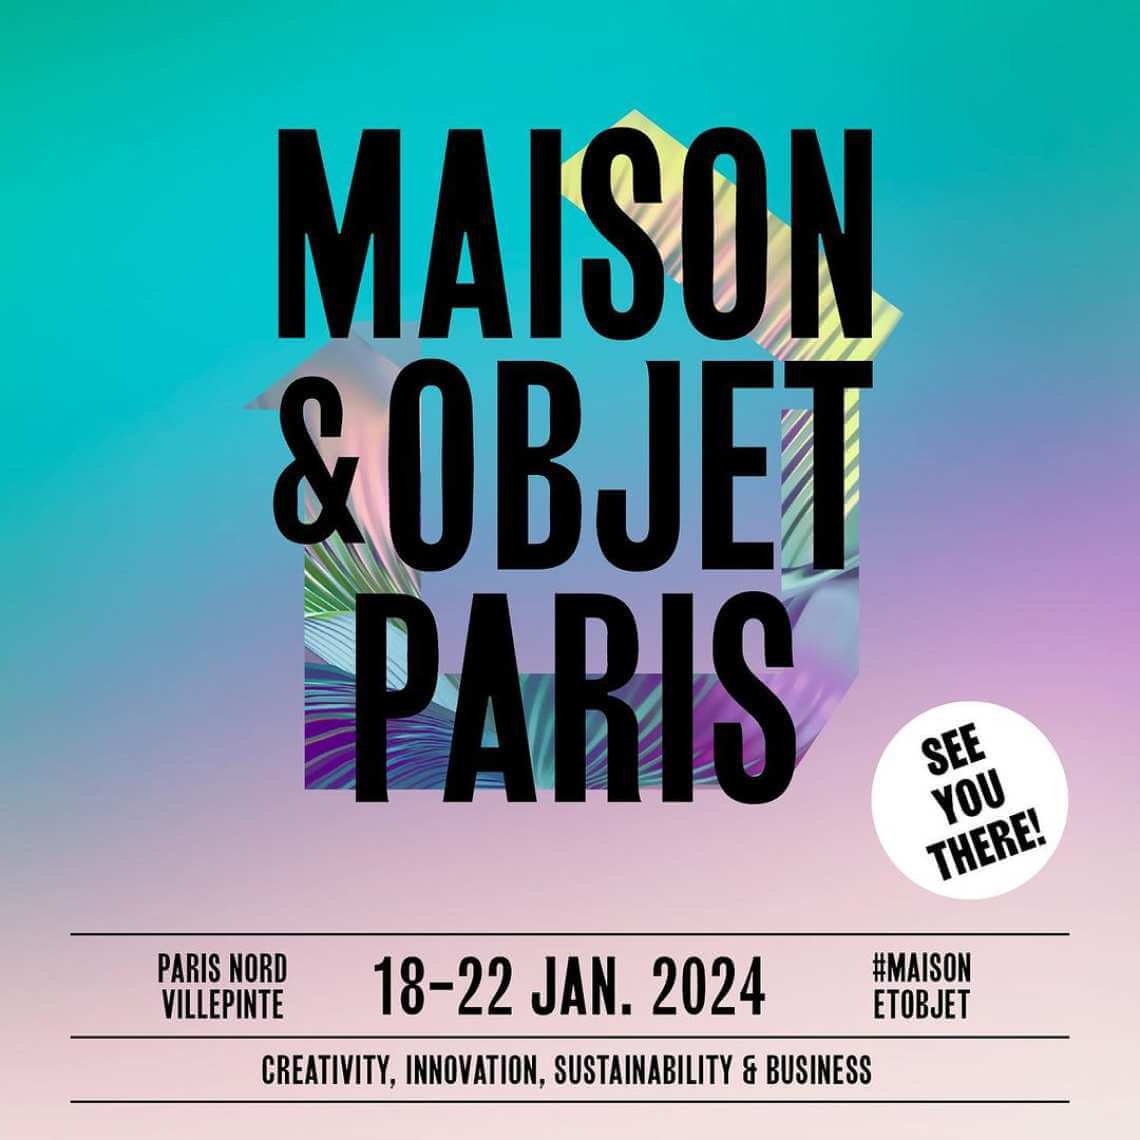 διαγωνισμός Maison&Objet bluecycle